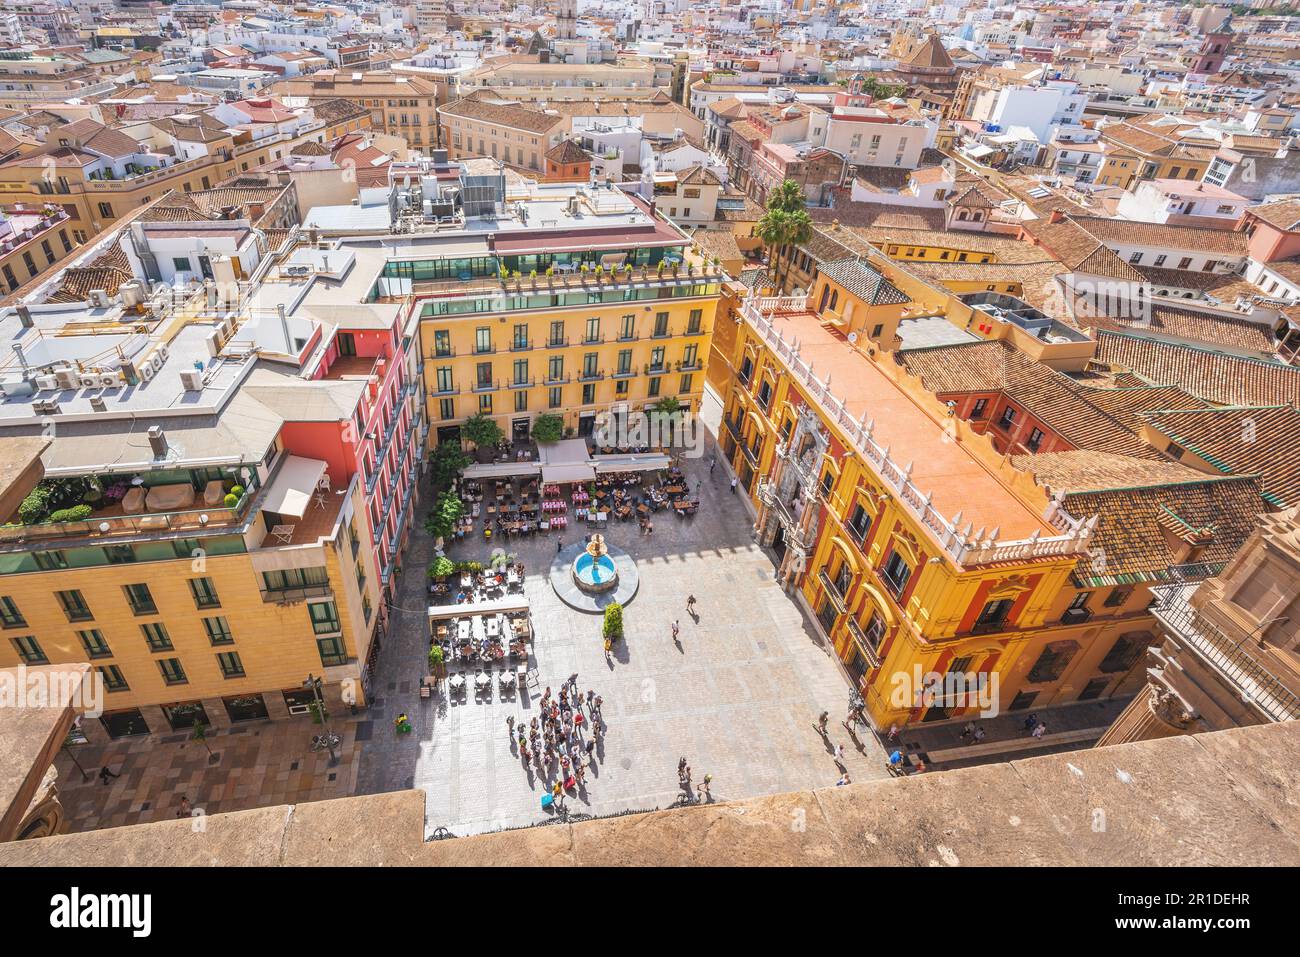 Blick aus der Vogelperspektive auf Plaza del Obispo (Bischofsplatz) und Bischofspalast (Bischofspalast) - Malaga, Andalusien, Spanien Stockfoto